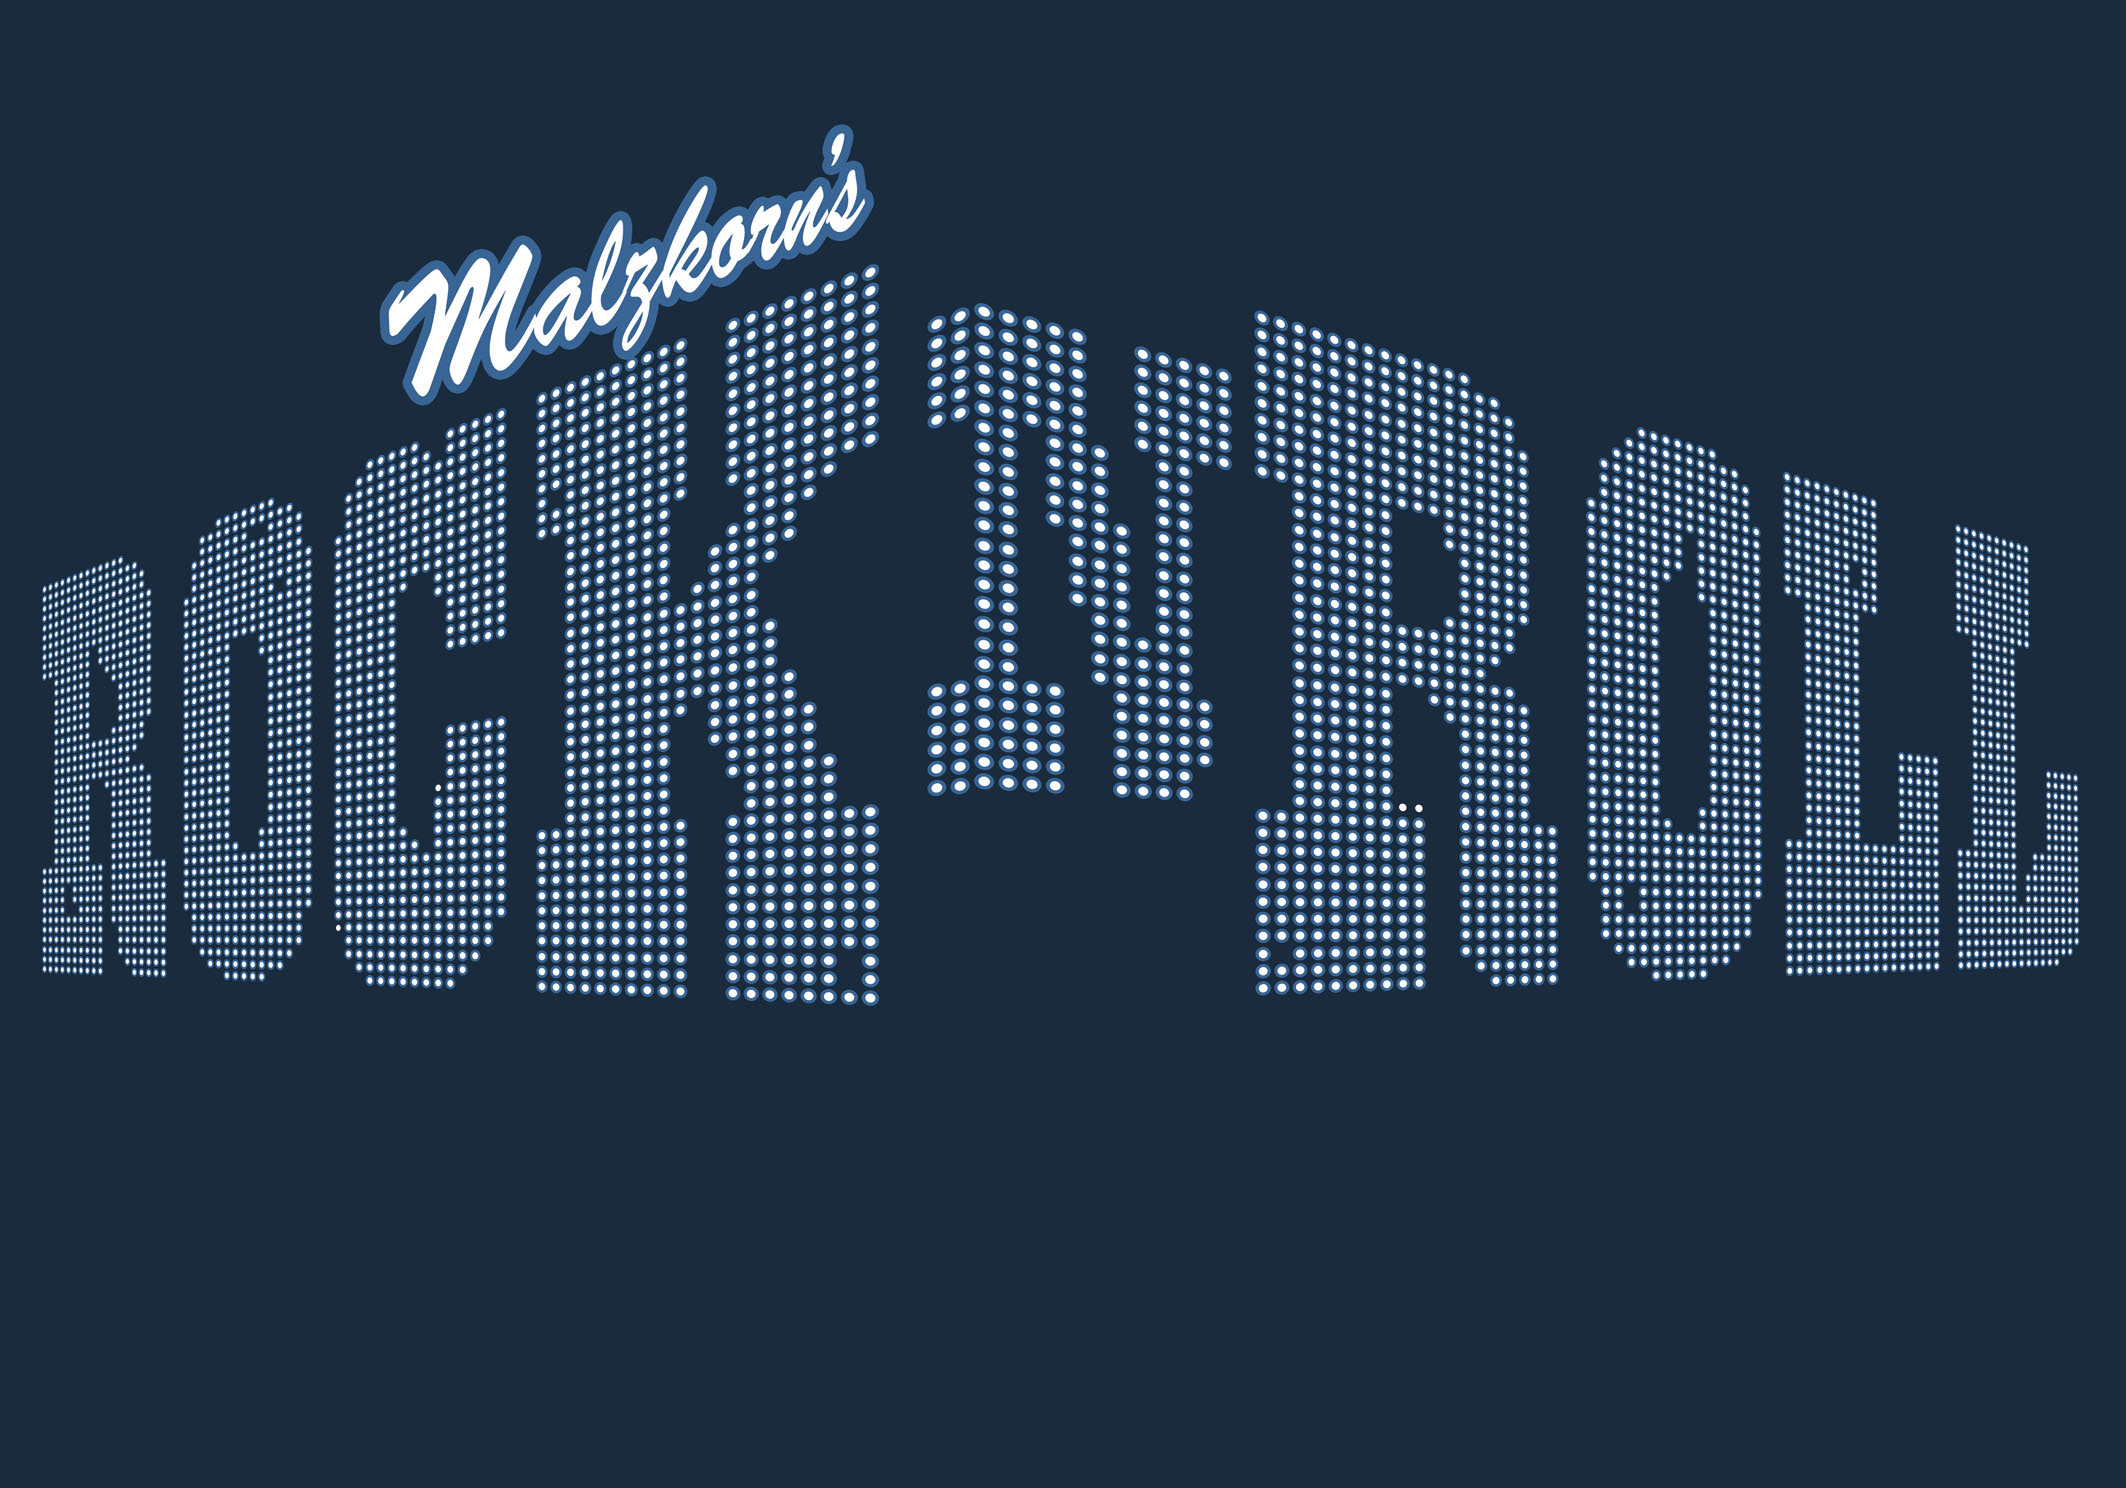 Malzkorn's Rock'n'Roll